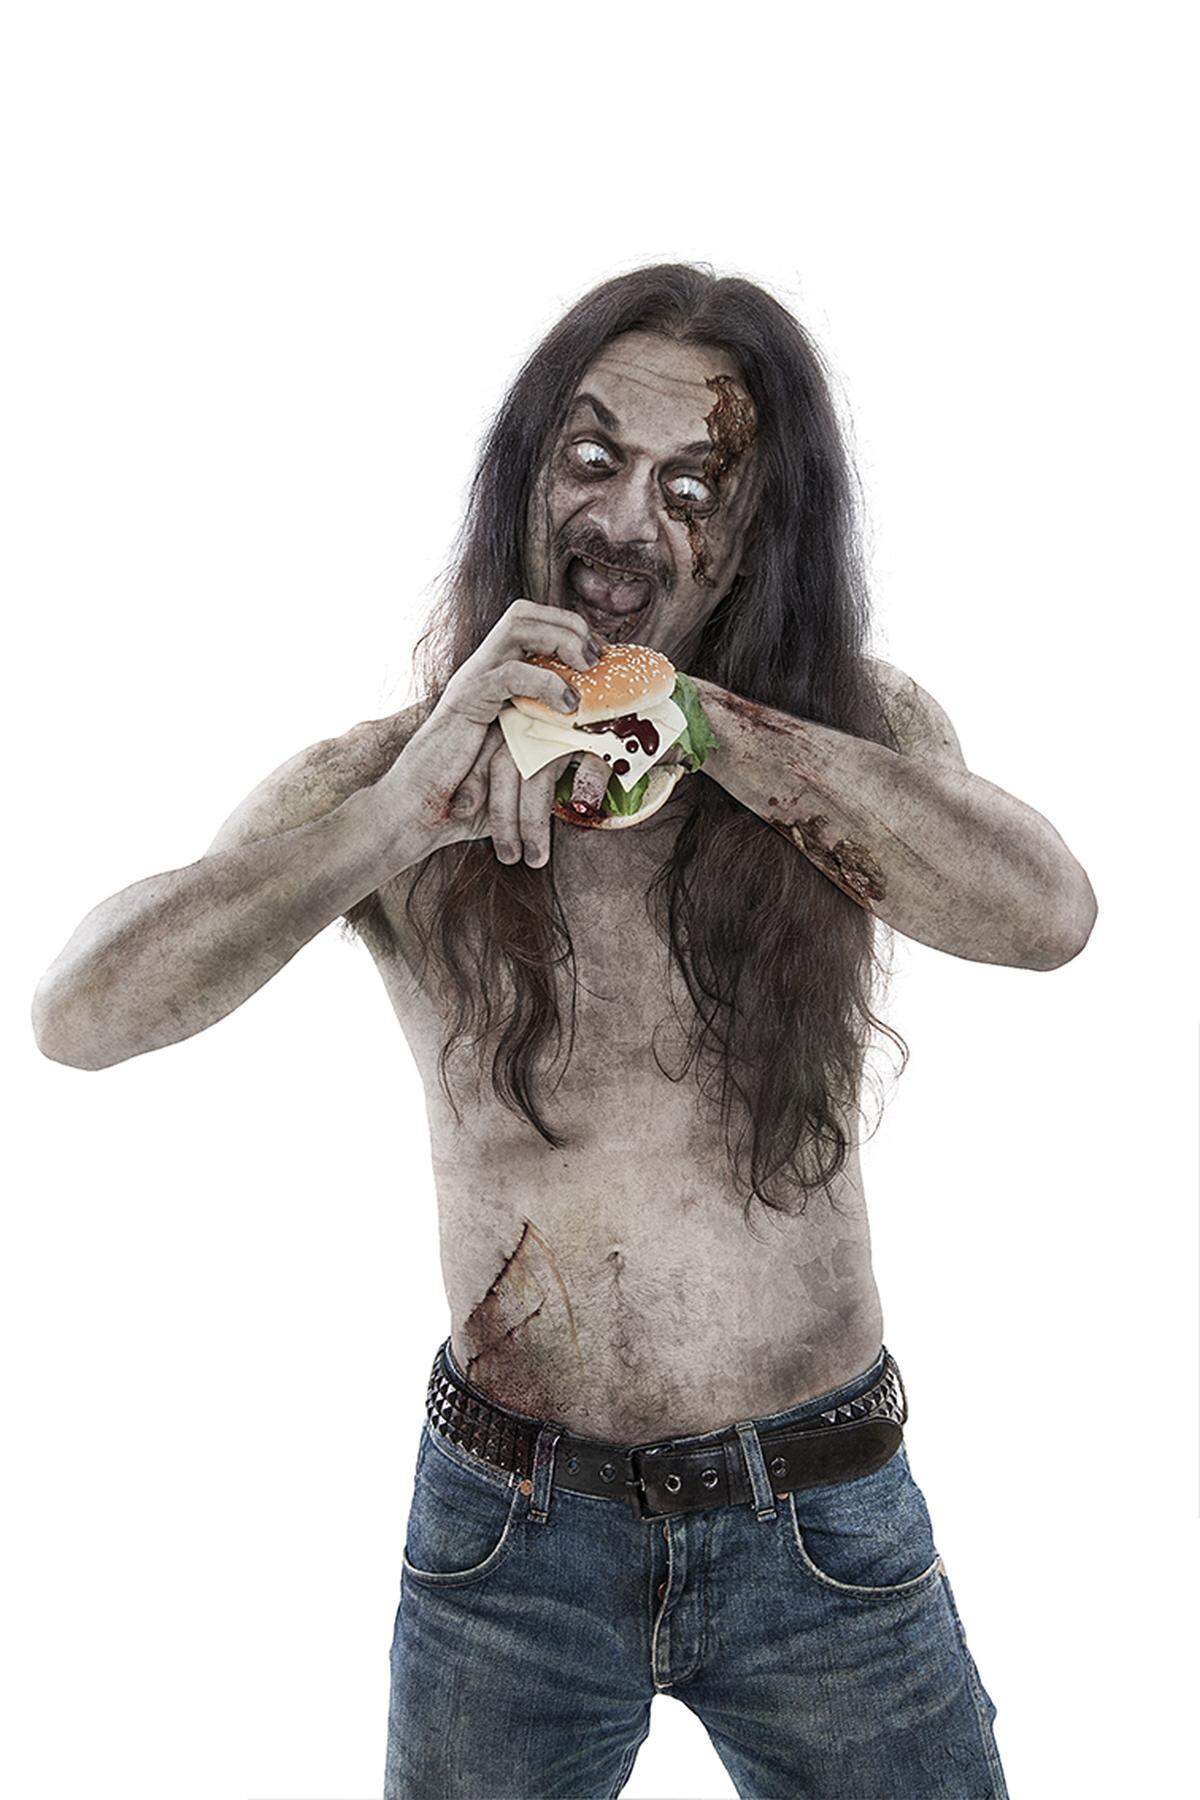 Death-Metal-Sänger Martin Schirenc - übrigens Vegetarier und Mitglied der Band "Zombie Inc." - beim Biss in einen Zombieburger.